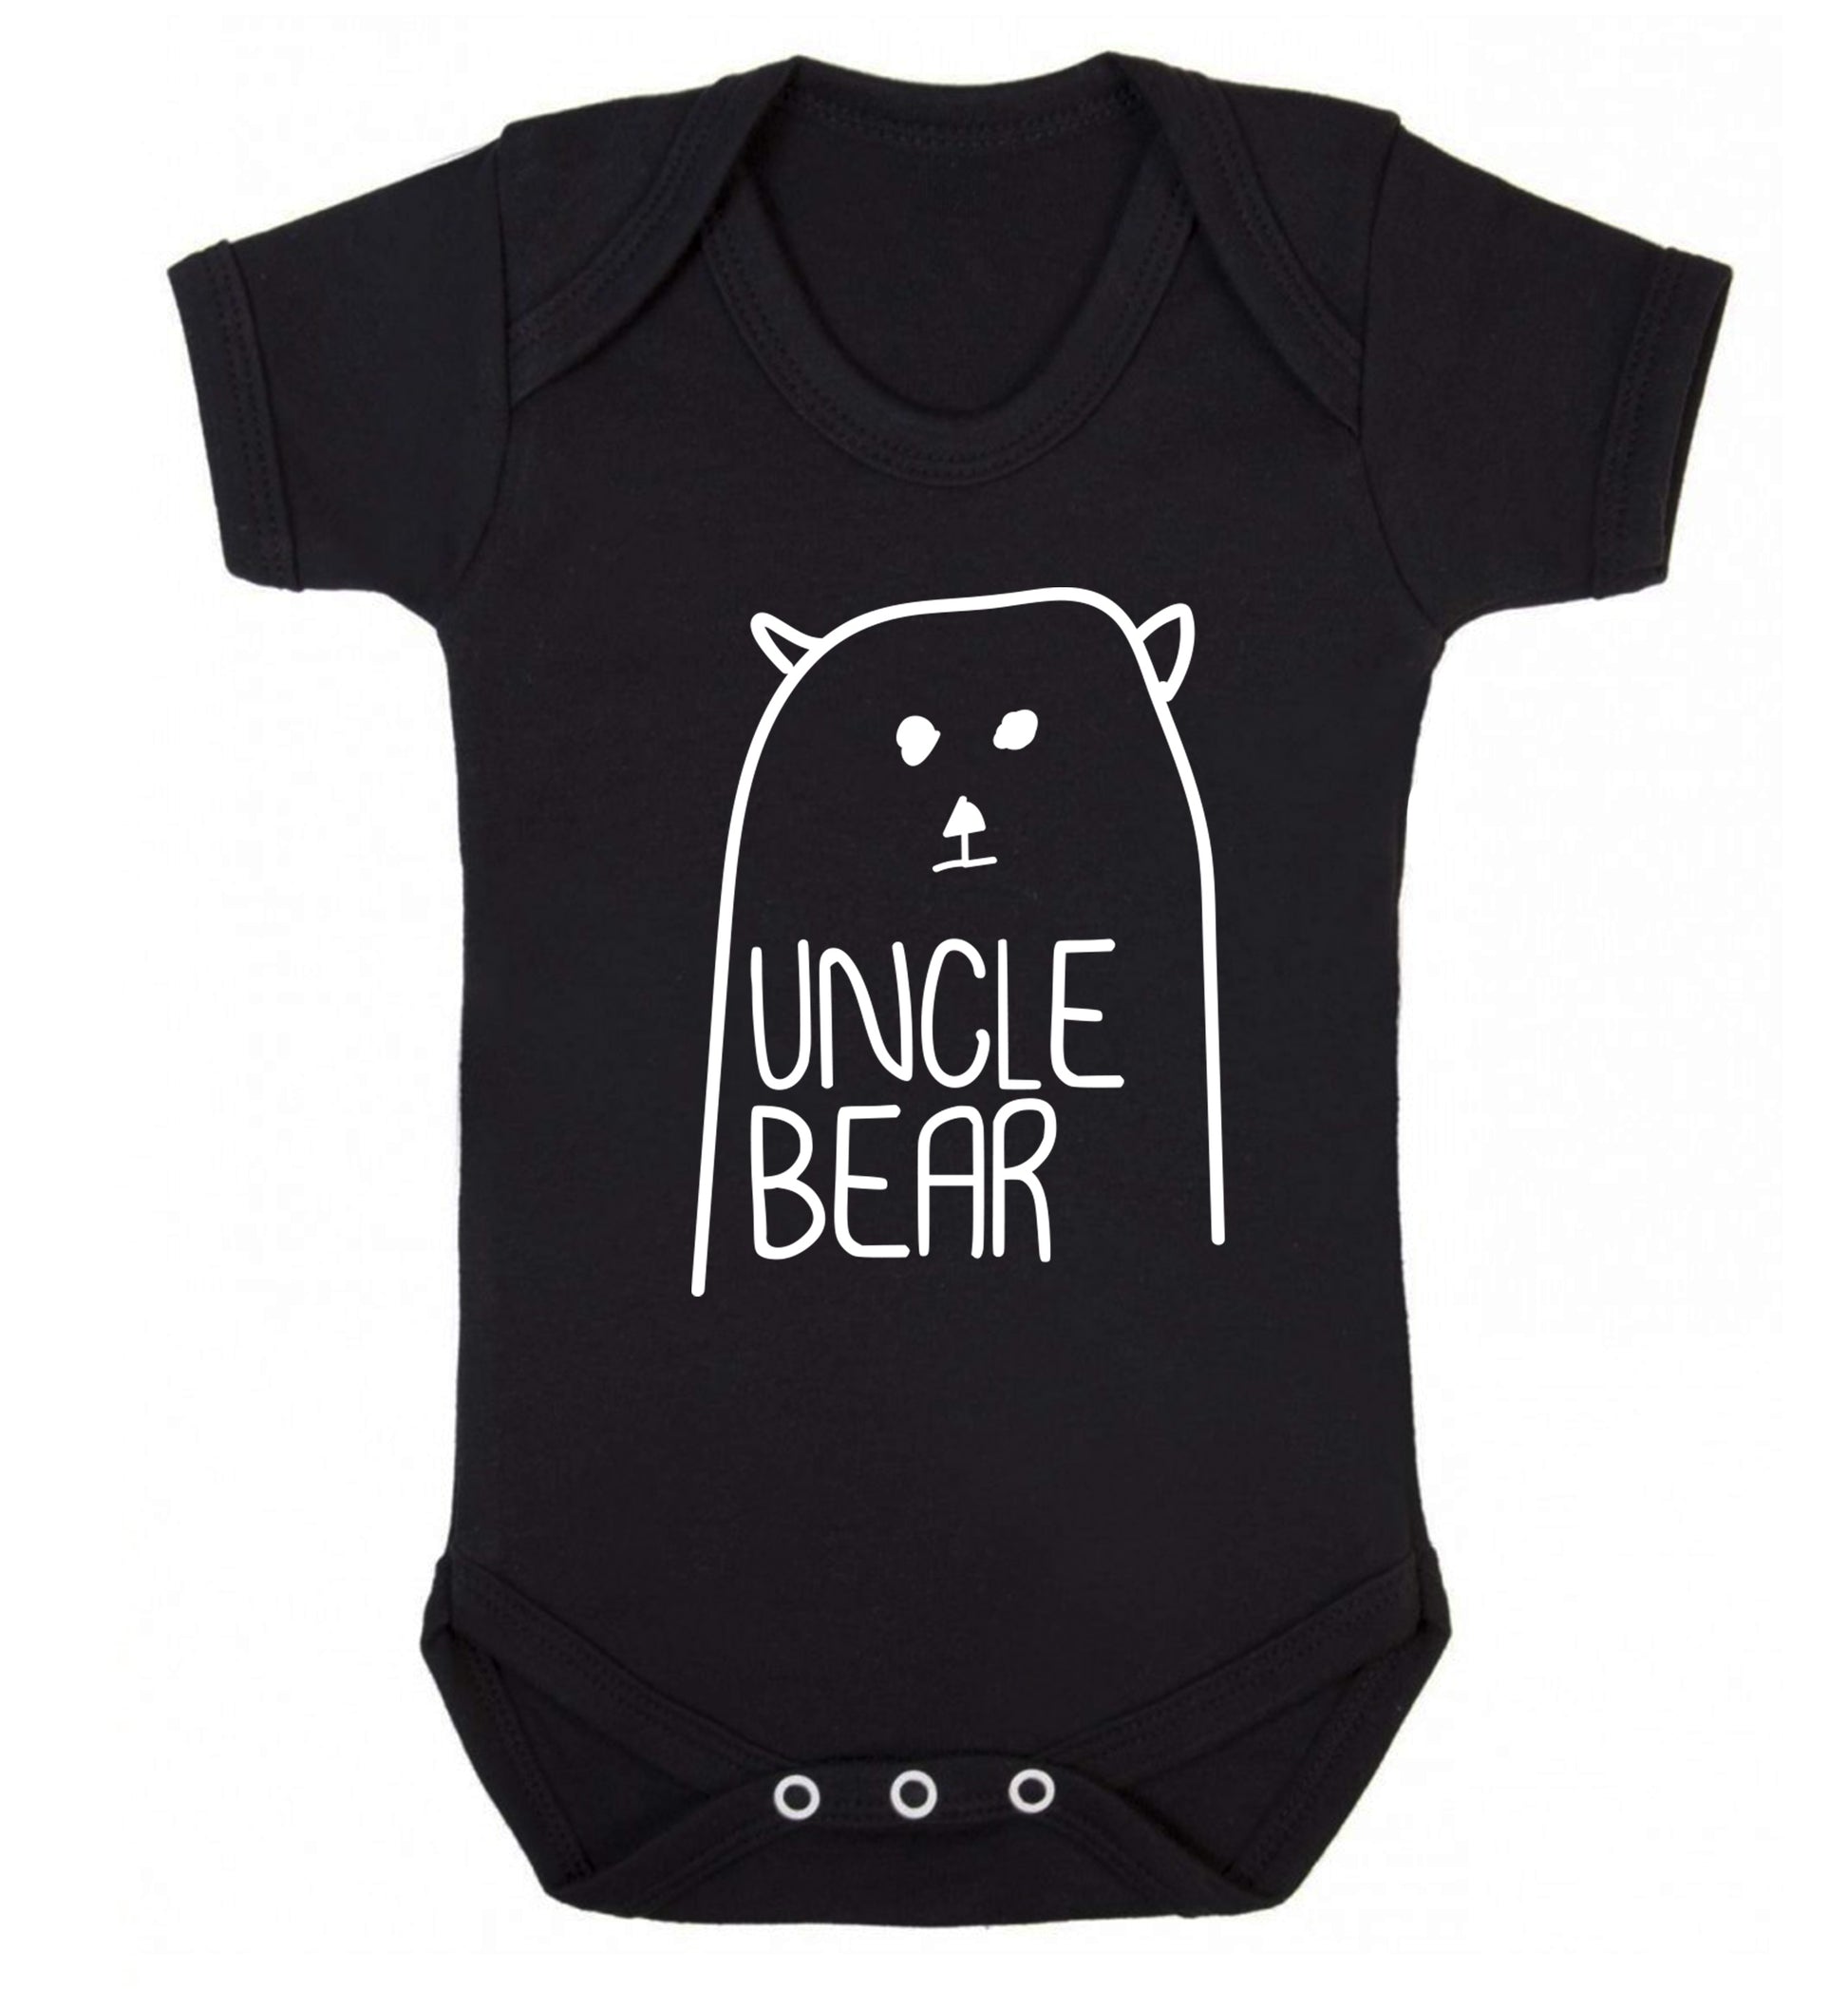 Uncle bear Baby Vest black 18-24 months